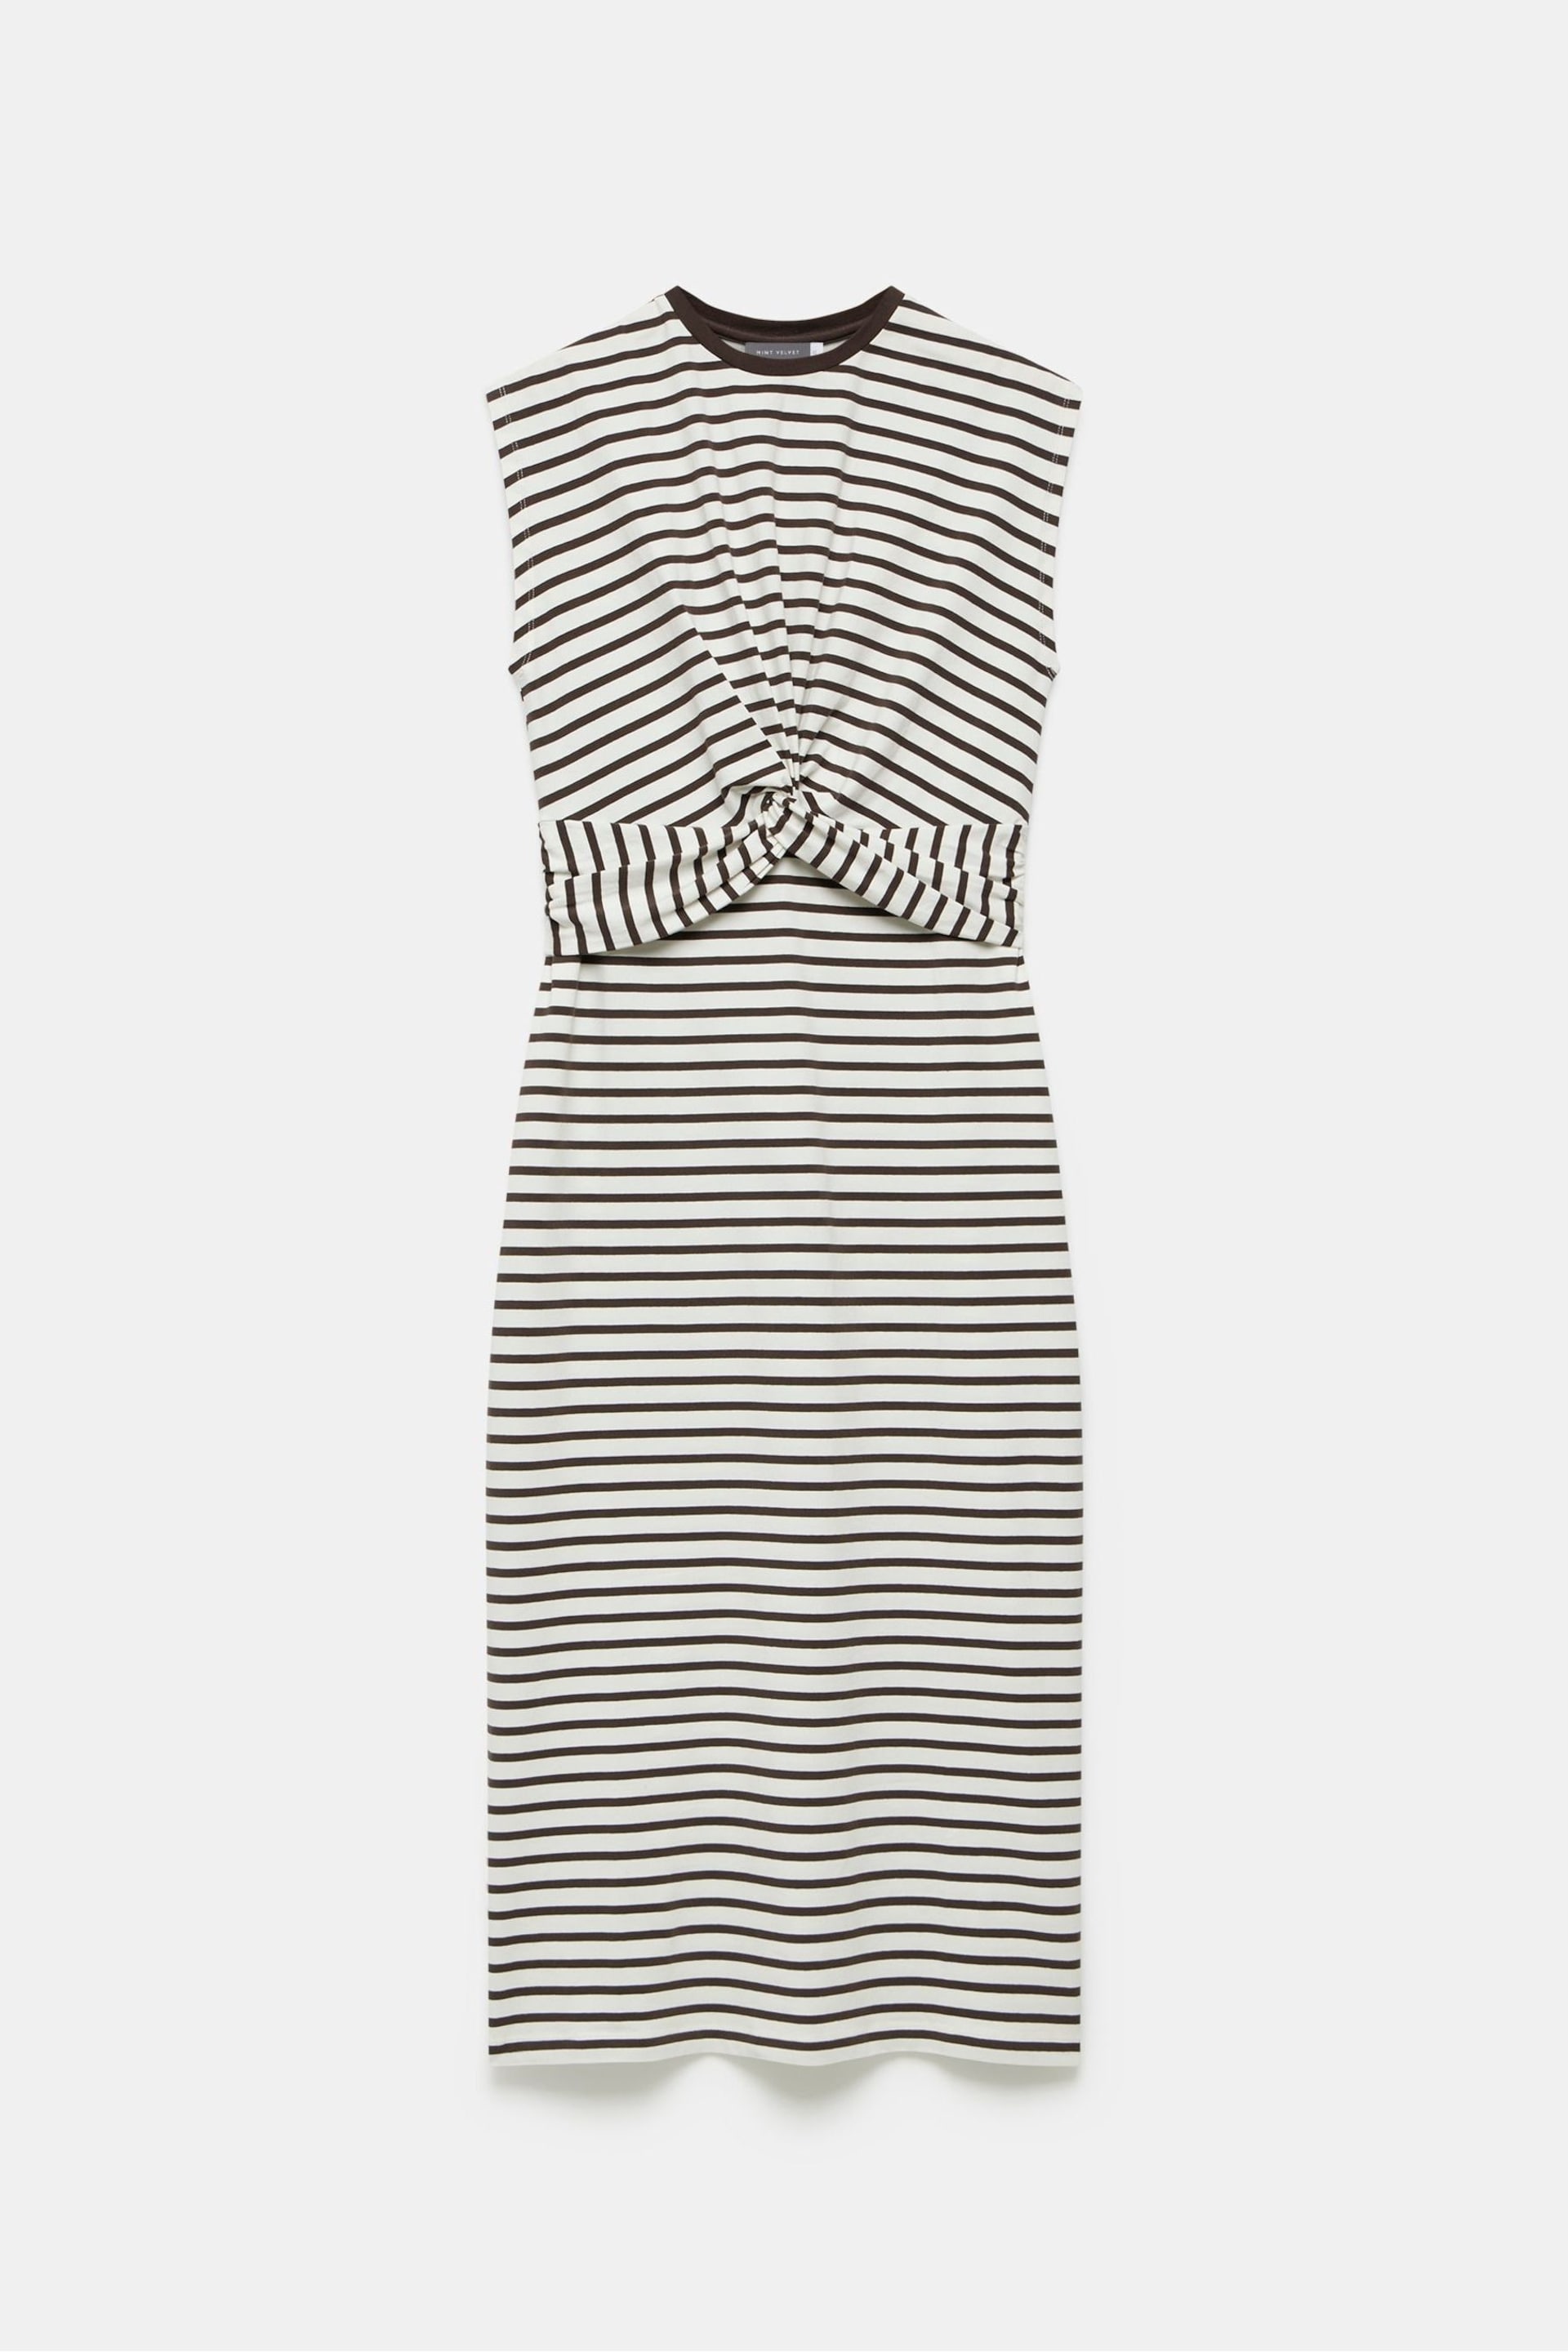 Mint Velvet Brown Twist Stripe Jersey Dress - Image 3 of 4